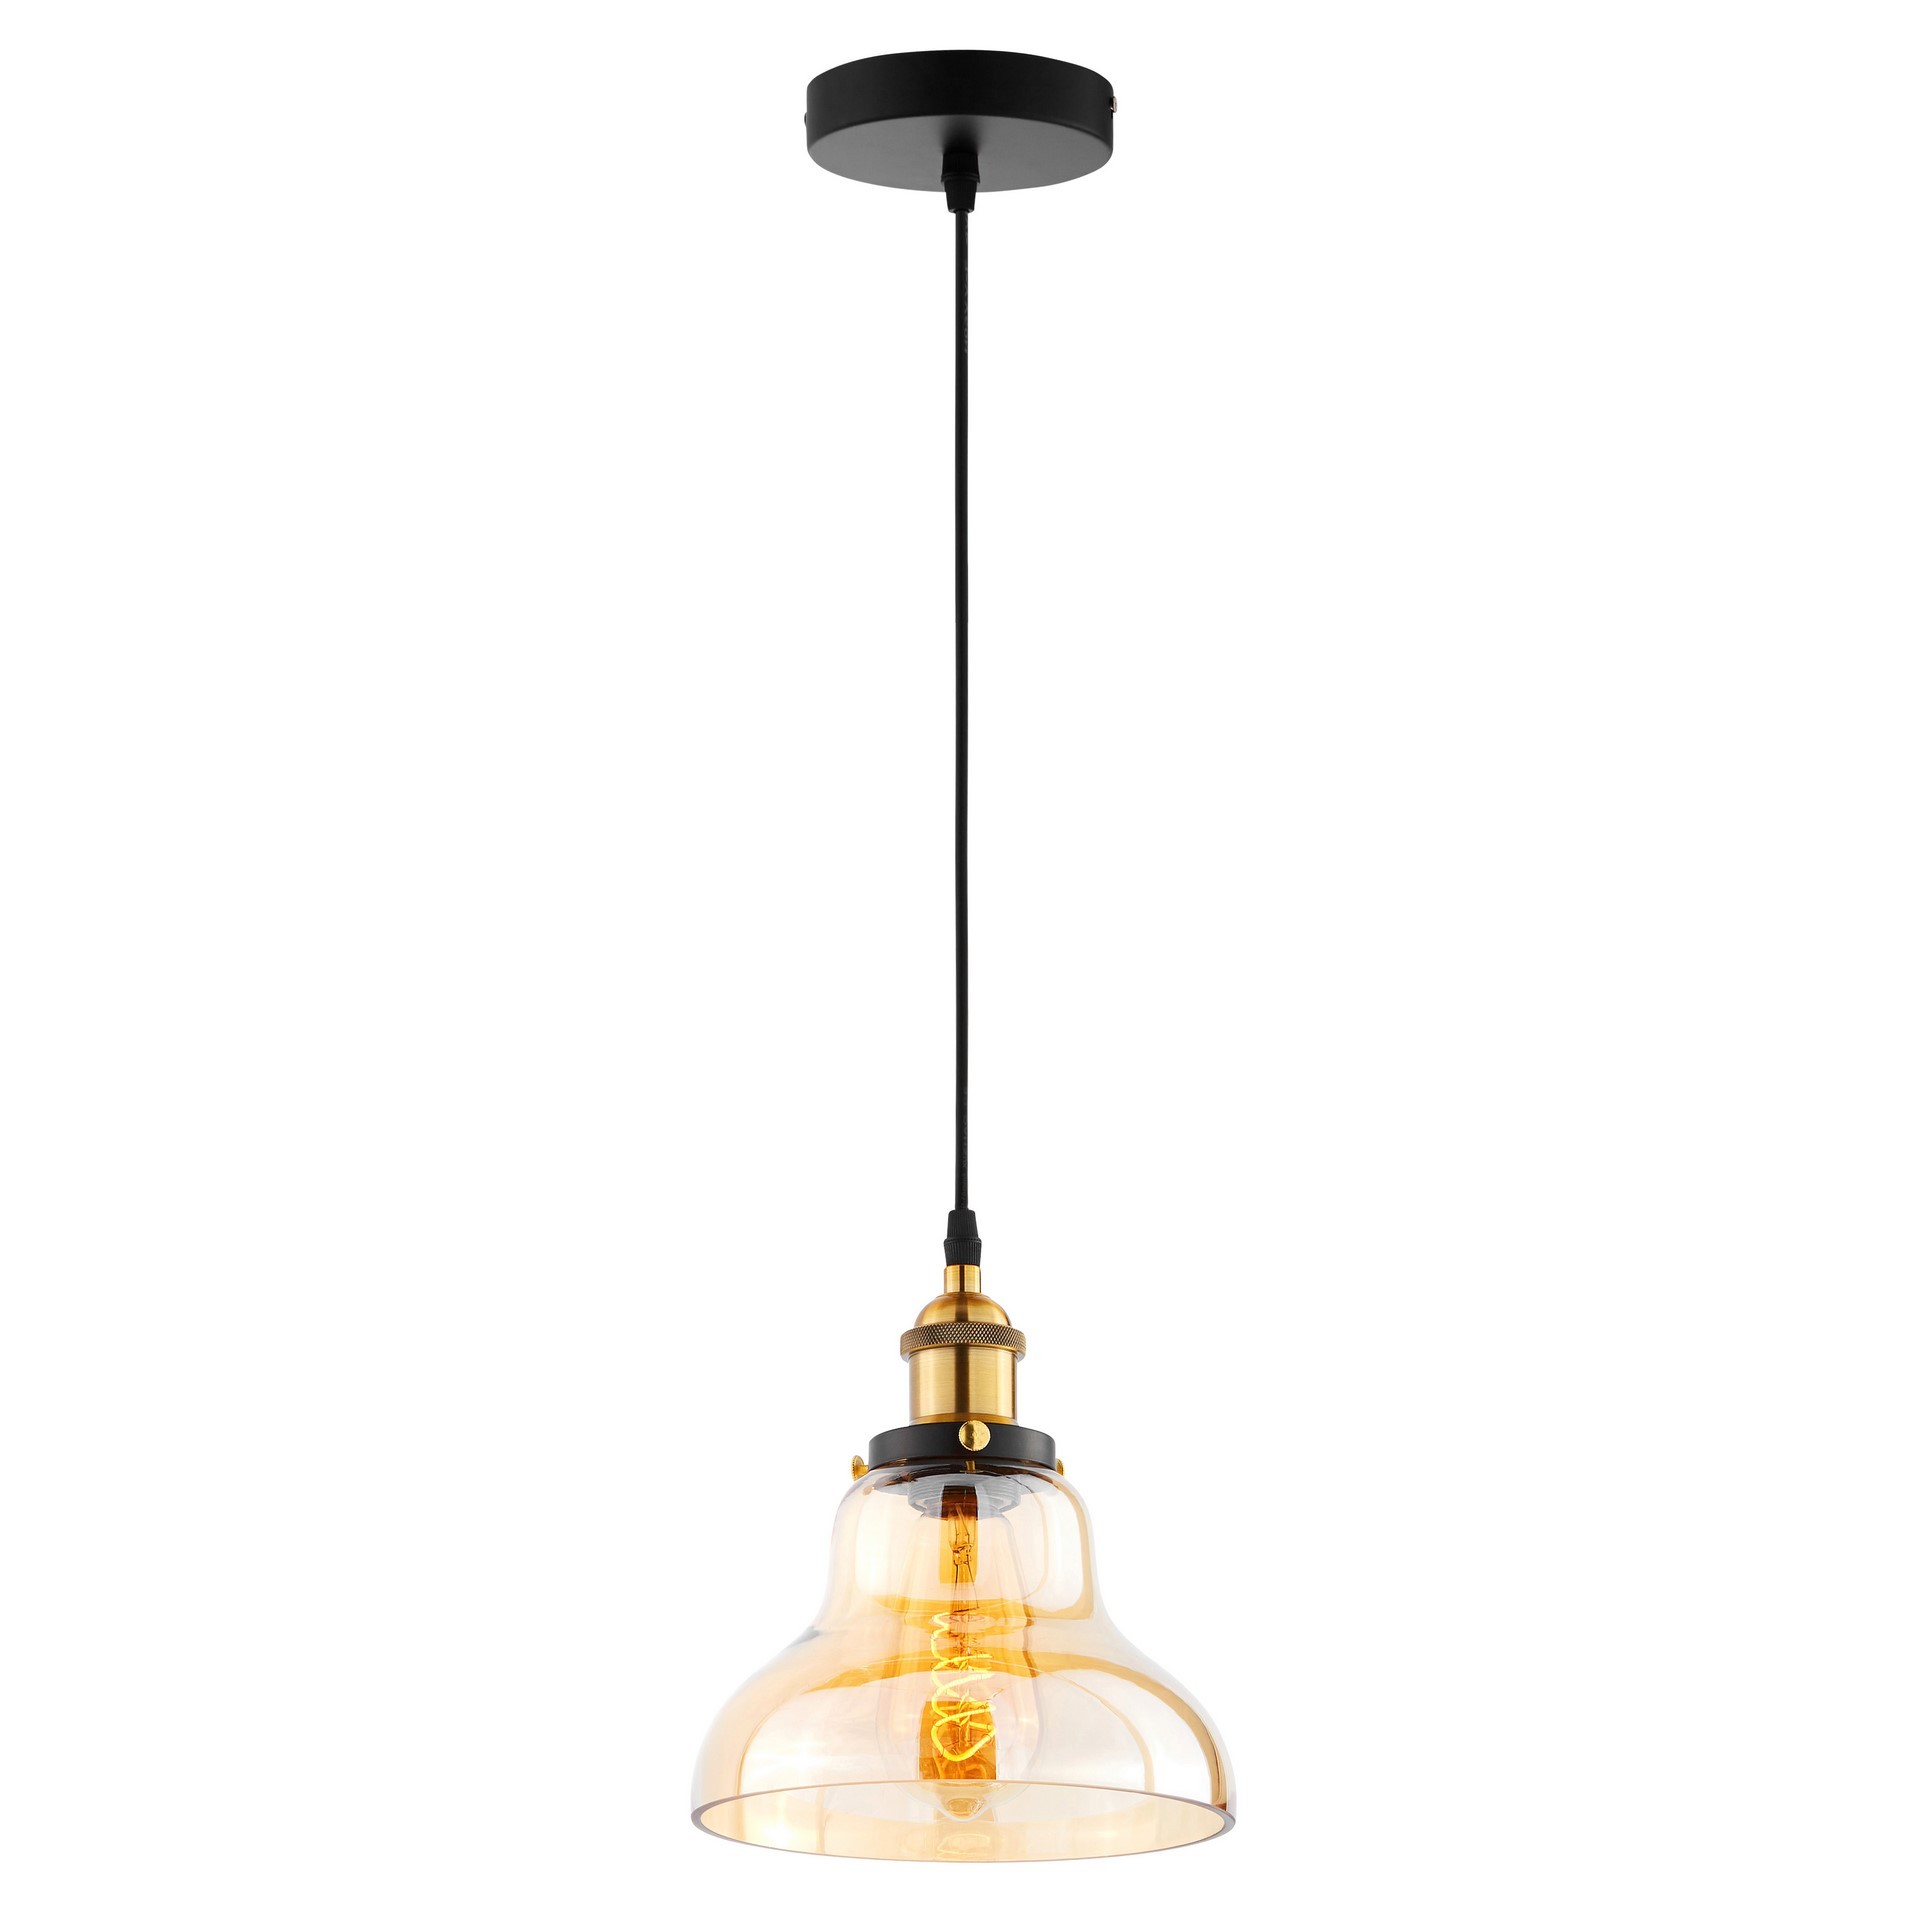 Lampa wisząca bursztynowa ZUBI szklana kopuła industrialna retro vintage - Lumina Deco zdjęcie 3